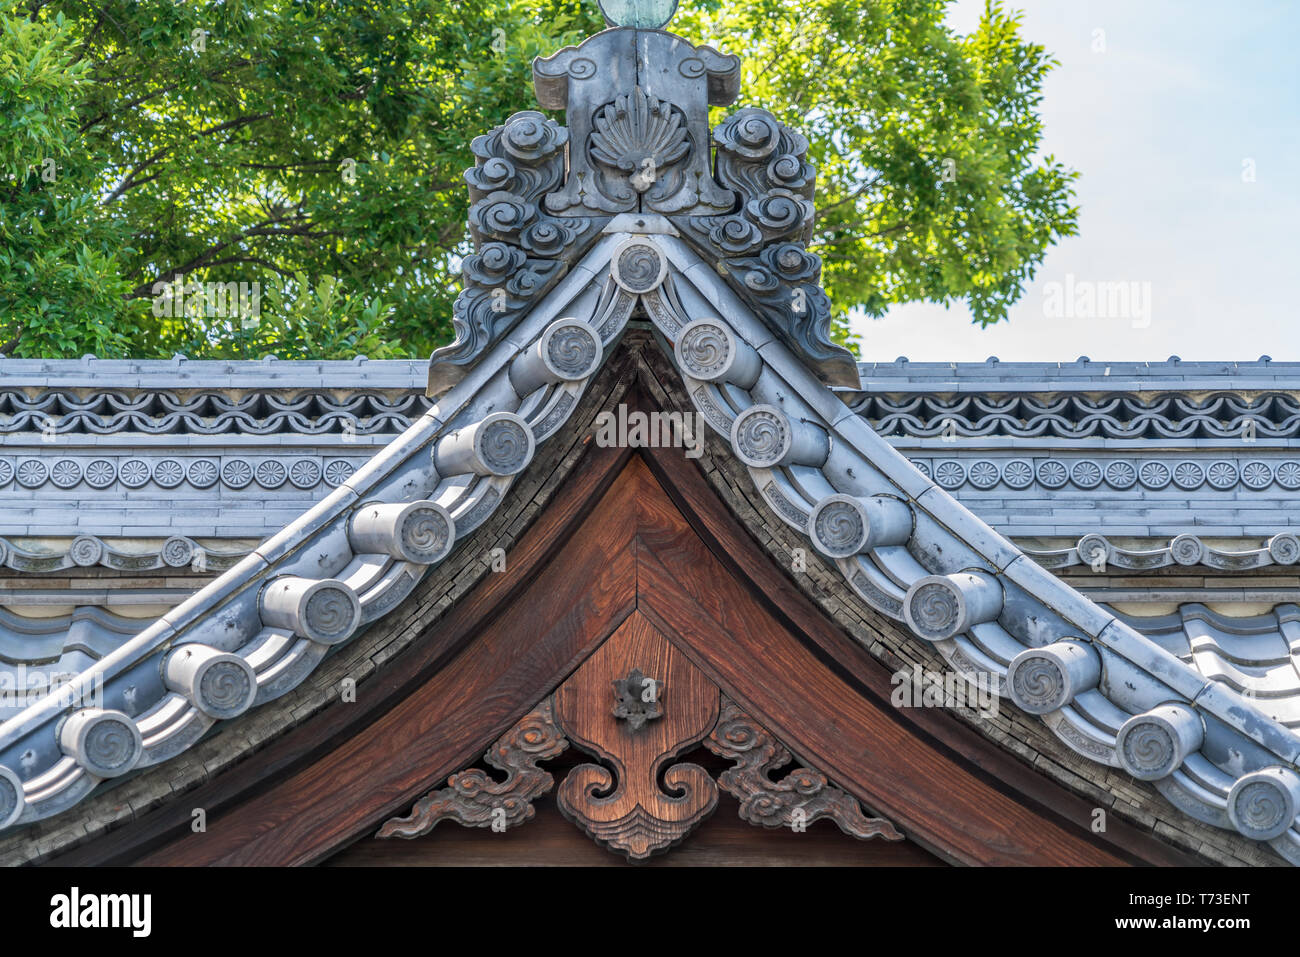 Furukoku Akiba santuario. Dettaglio del tetto. Gable pendant (Omogegyo), Kudarigegyo, il noleggio e la virgola decoraetd piastrelle (Tomoemon). Situato in Chuo Dori (Omotesando Foto Stock